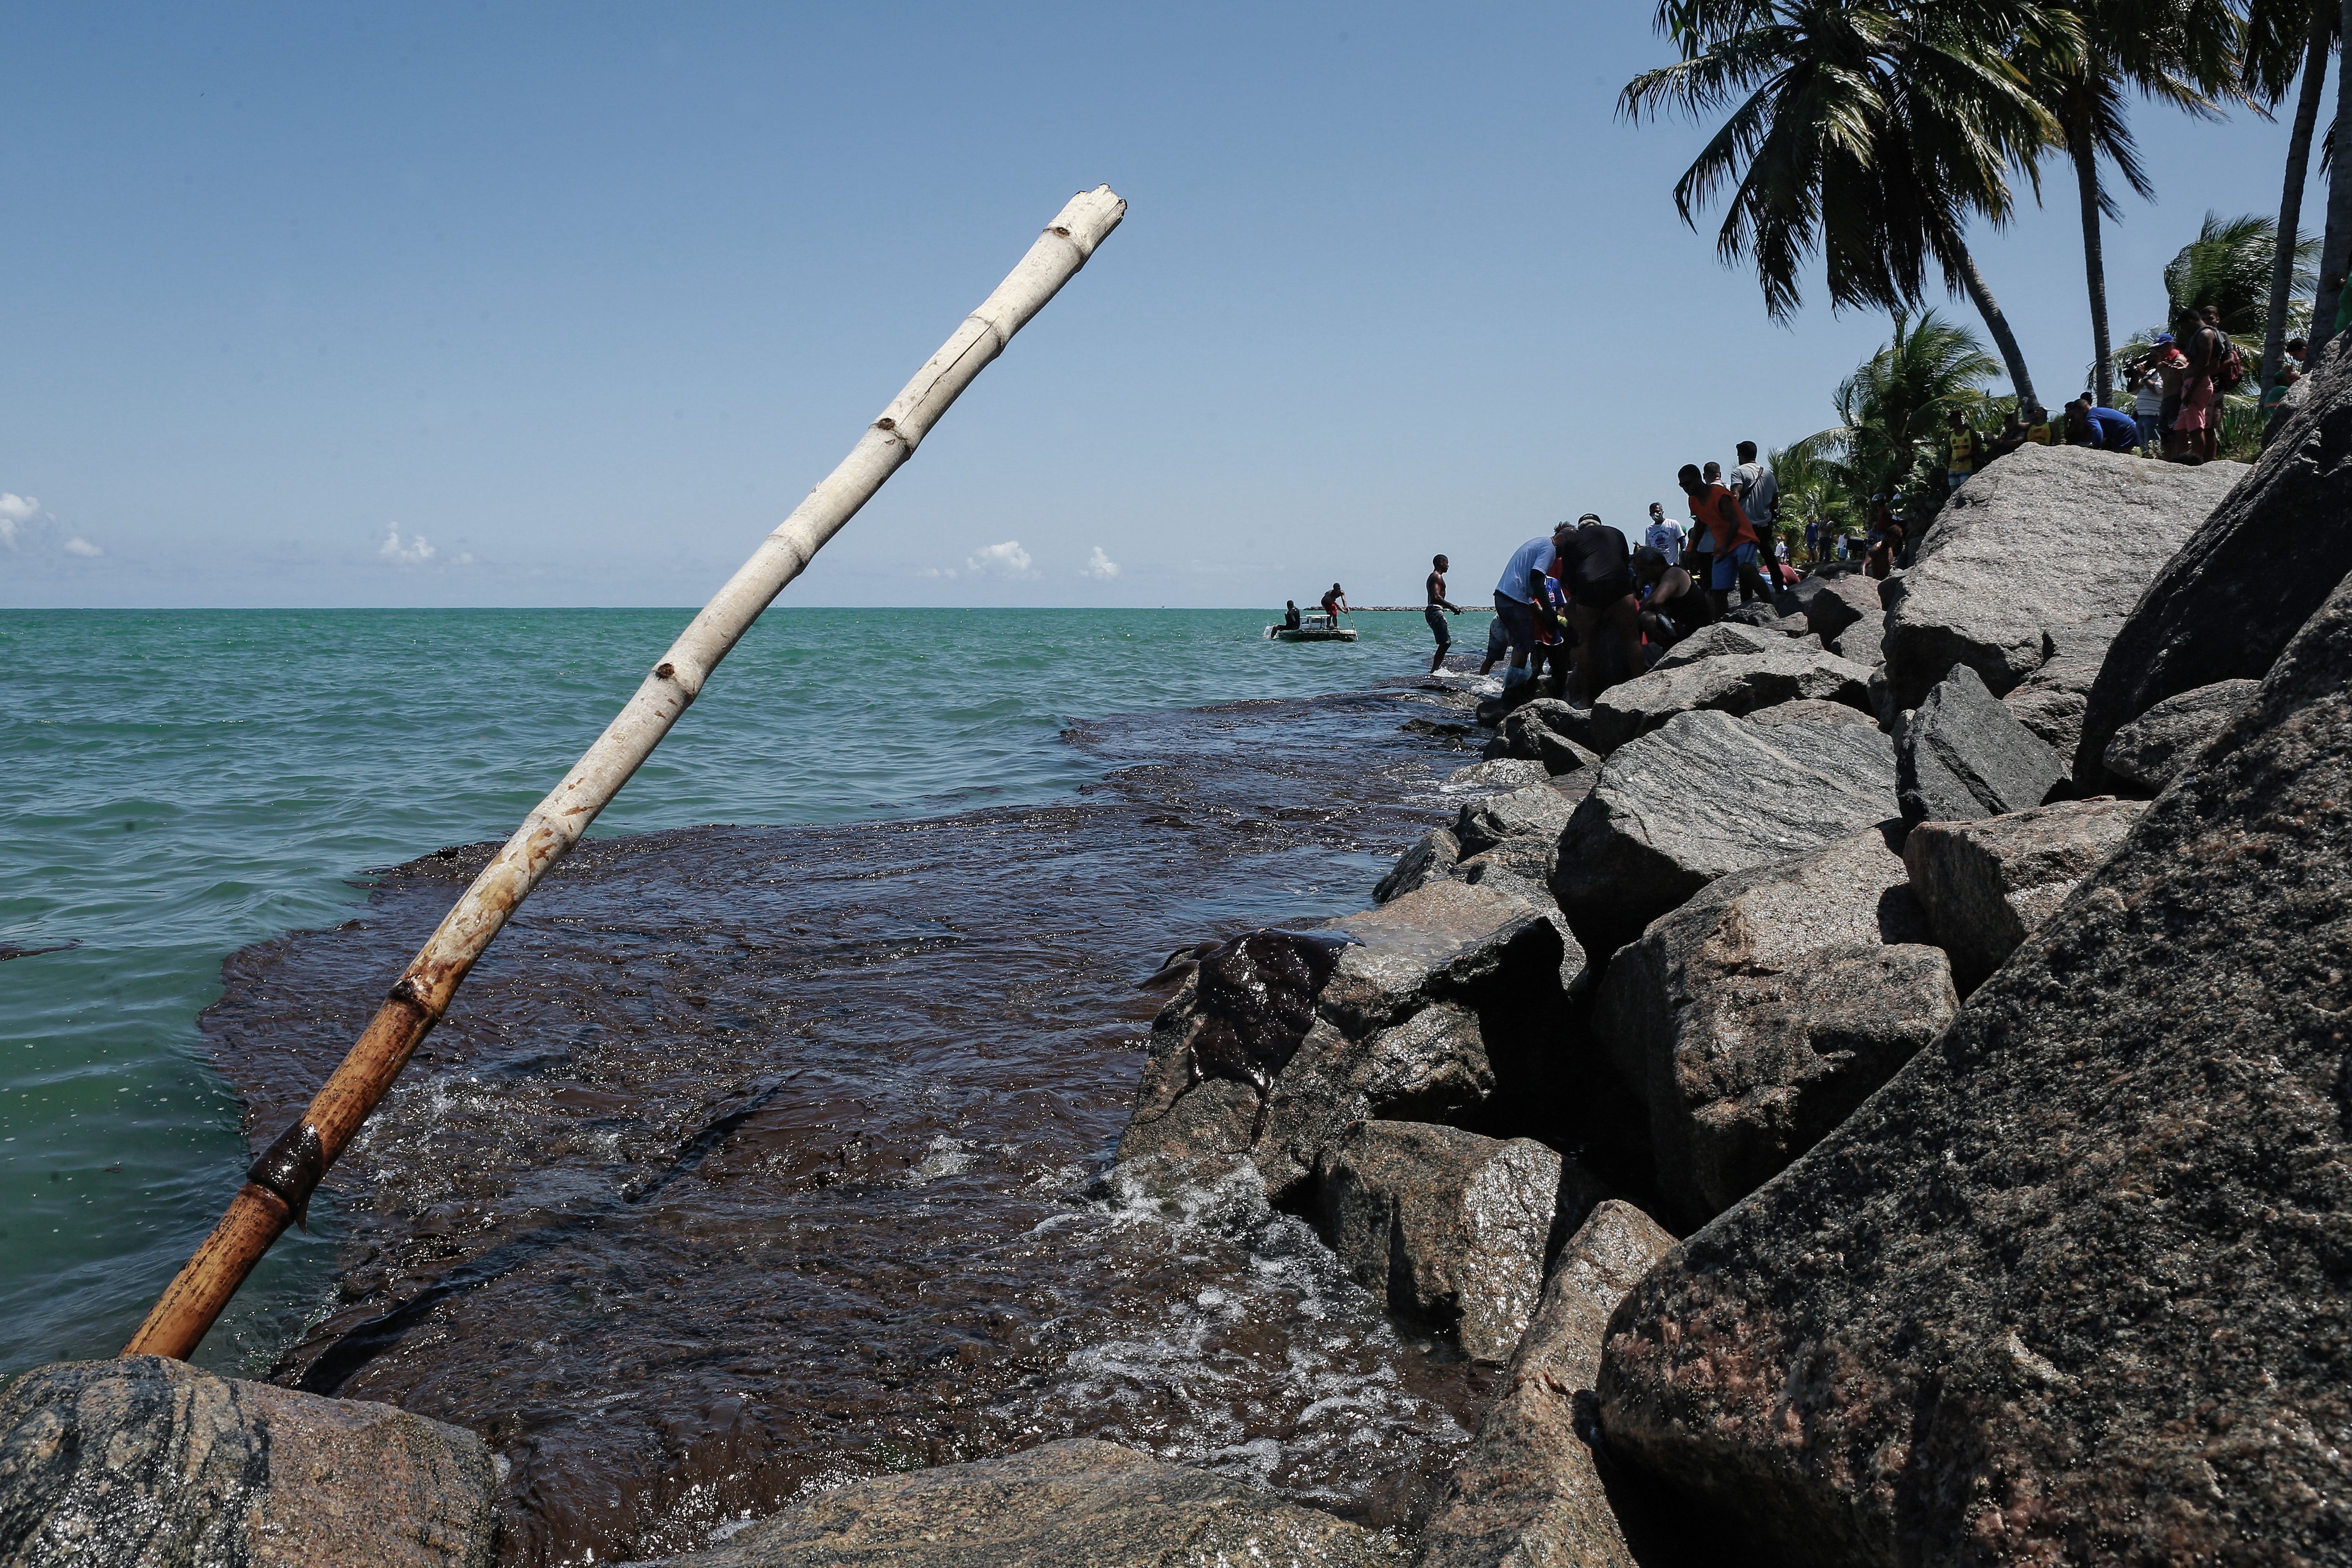 Voluntarios limpian el petróleo en una playa de Pernambuco (LEO MALAFAIA / AFP)